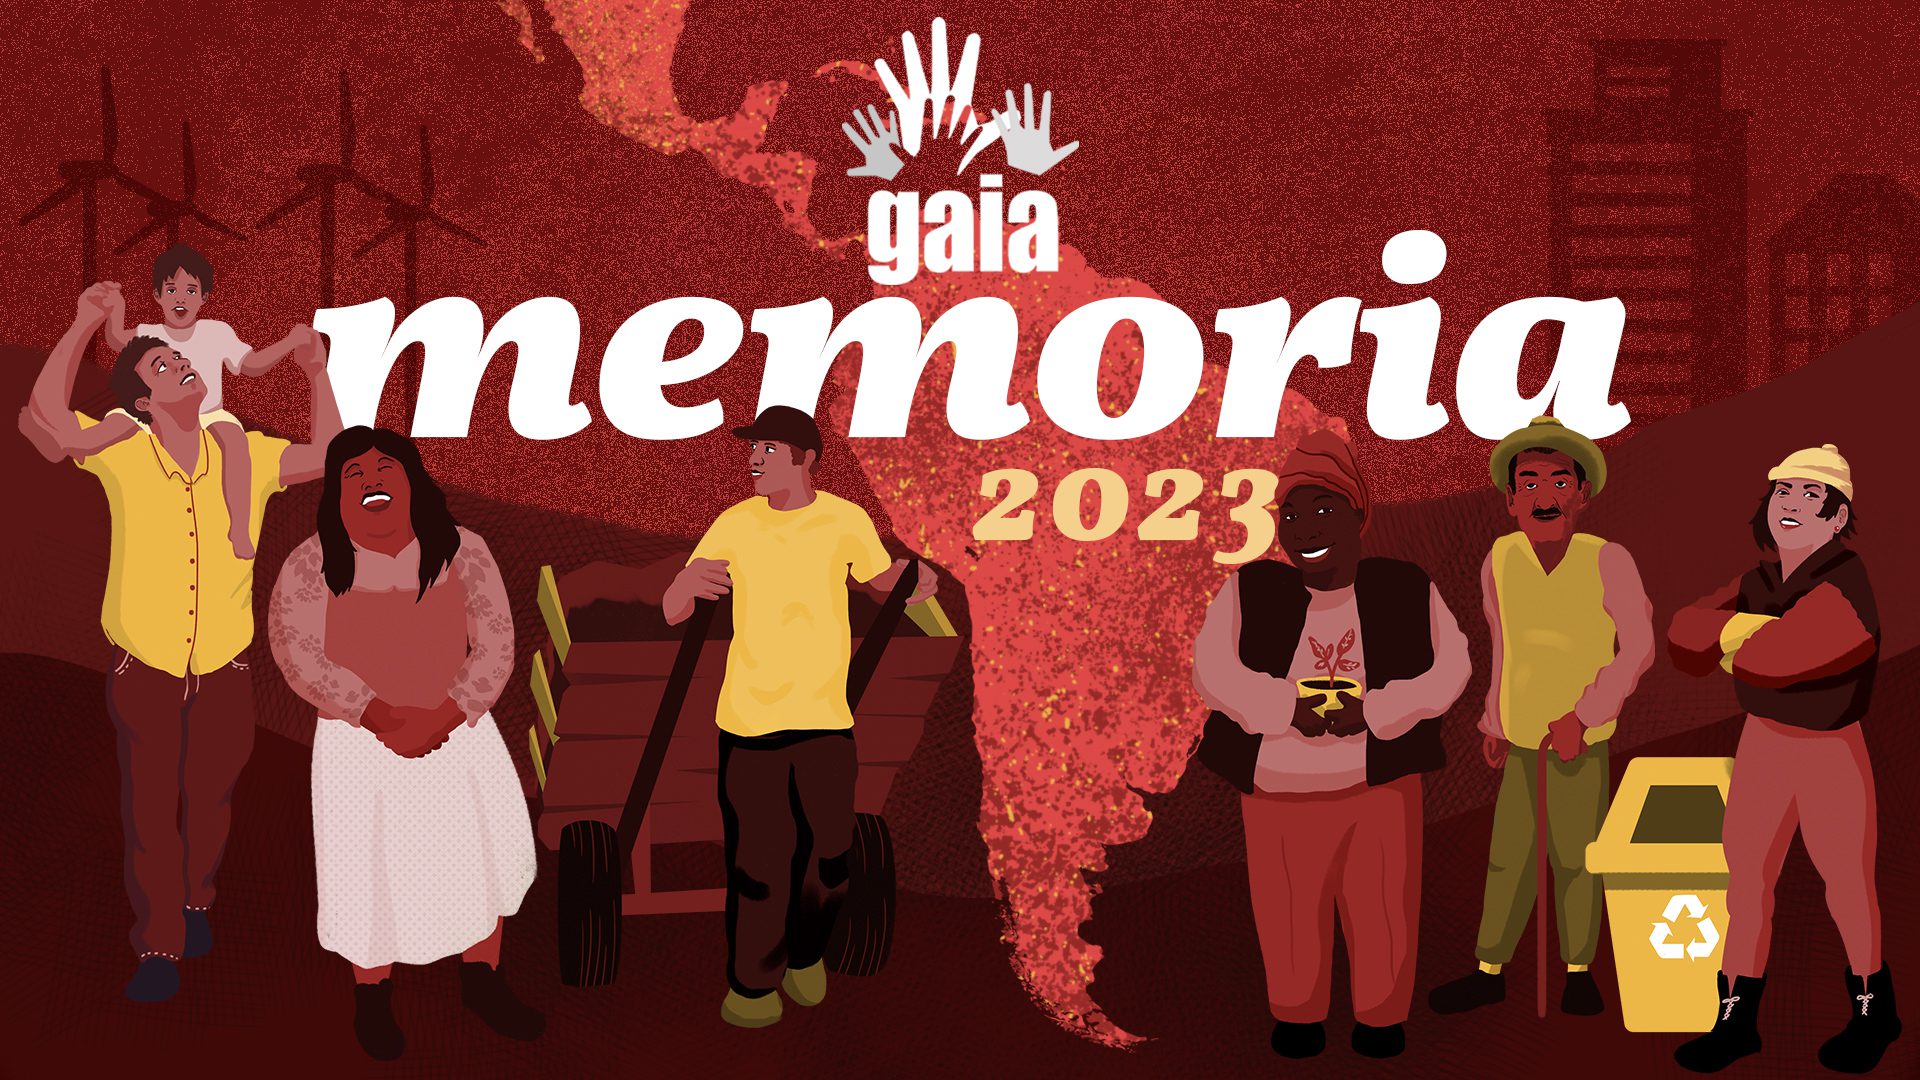 Portada memoria GAIA 2023. Fondo rojo con una mapa de América Latina y 6 personajes ilustrados que representan a los miembros de GAIA.